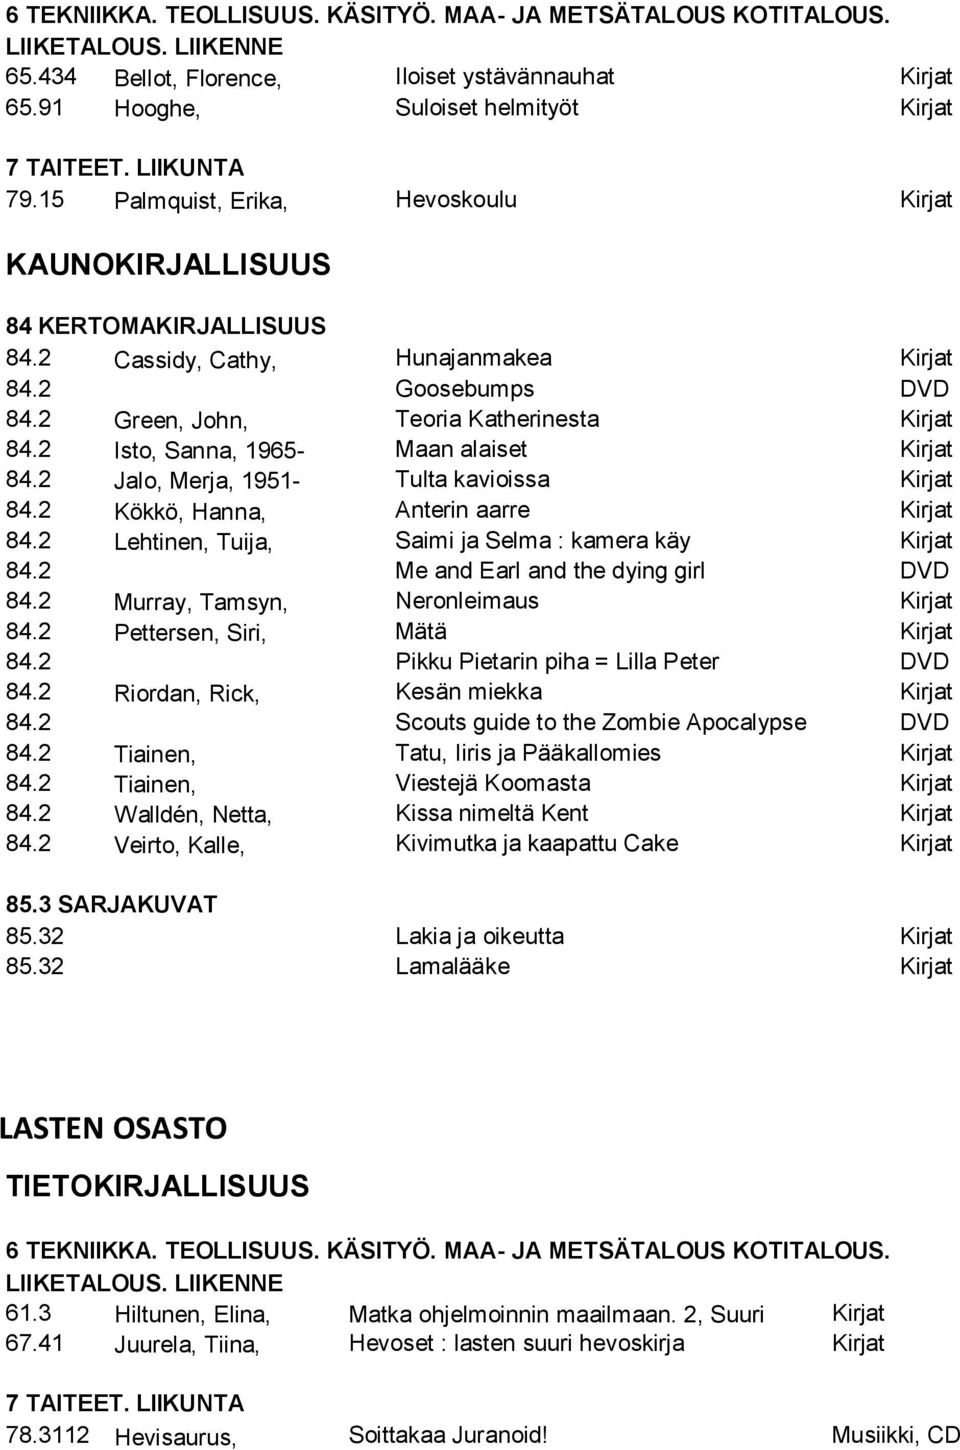 2 Isto, Sanna, 1965- Maan alaiset Kirjat 84.2 Jalo, Merja, 1951- Tulta kavioissa Kirjat 84.2 Kökkö, Hanna, Anterin aarre Kirjat 84.2 Lehtinen, Tuija, Saimi ja Selma : kamera käy Kirjat 84.